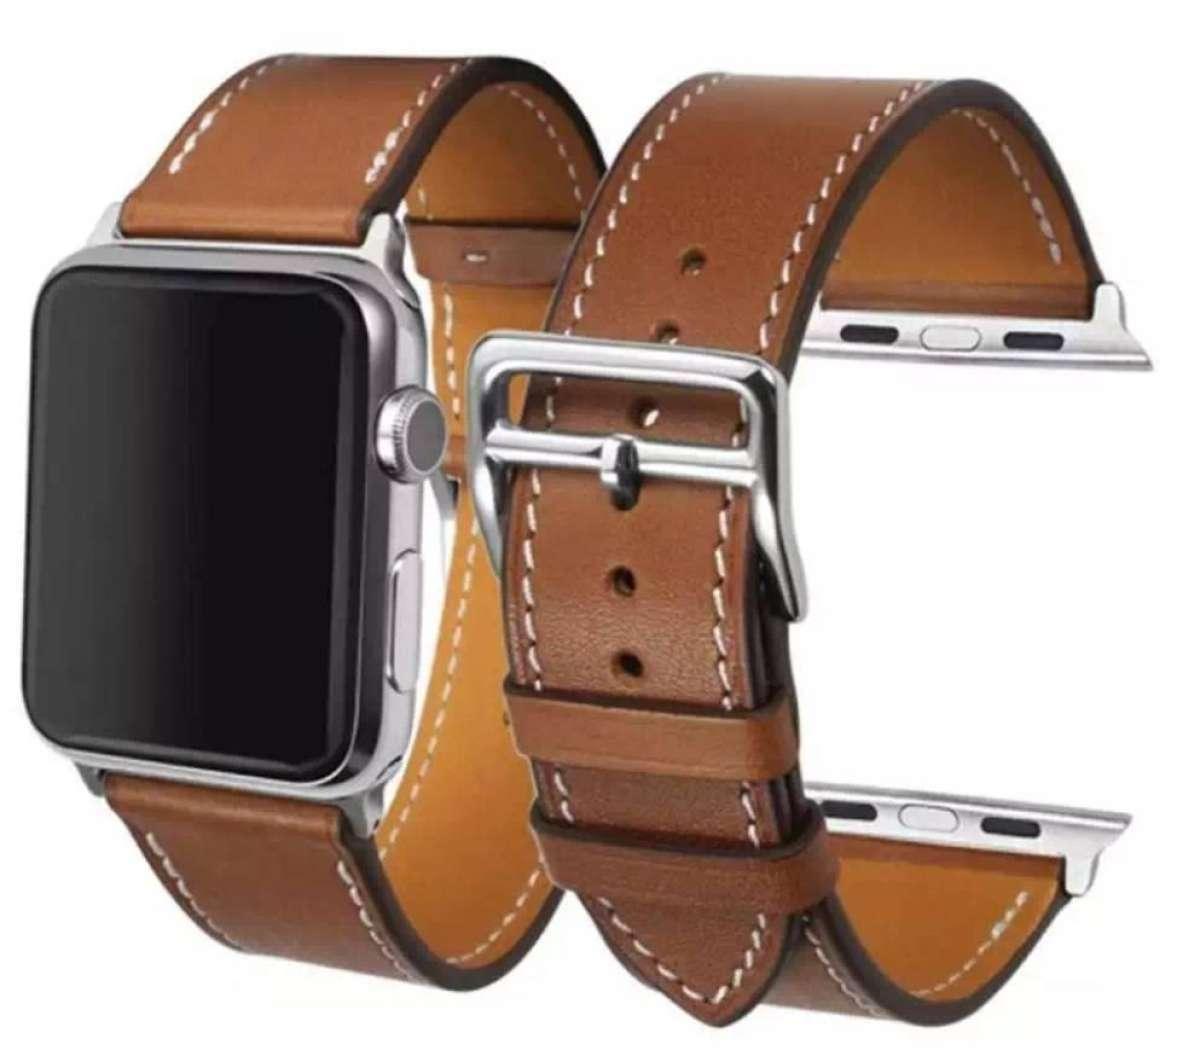 ส่งฟรี จากประเทศไทย สายนาฬิกาหนังเทียม แอปเปิ้ลวอช ซีรี่ส์ 1/2/3/4/5 ขนาด 42/44 มม.   Watch Series 1 / 2 / 3 / 4 / 5 Size 42/44 mm. Replacement Leather Buckle